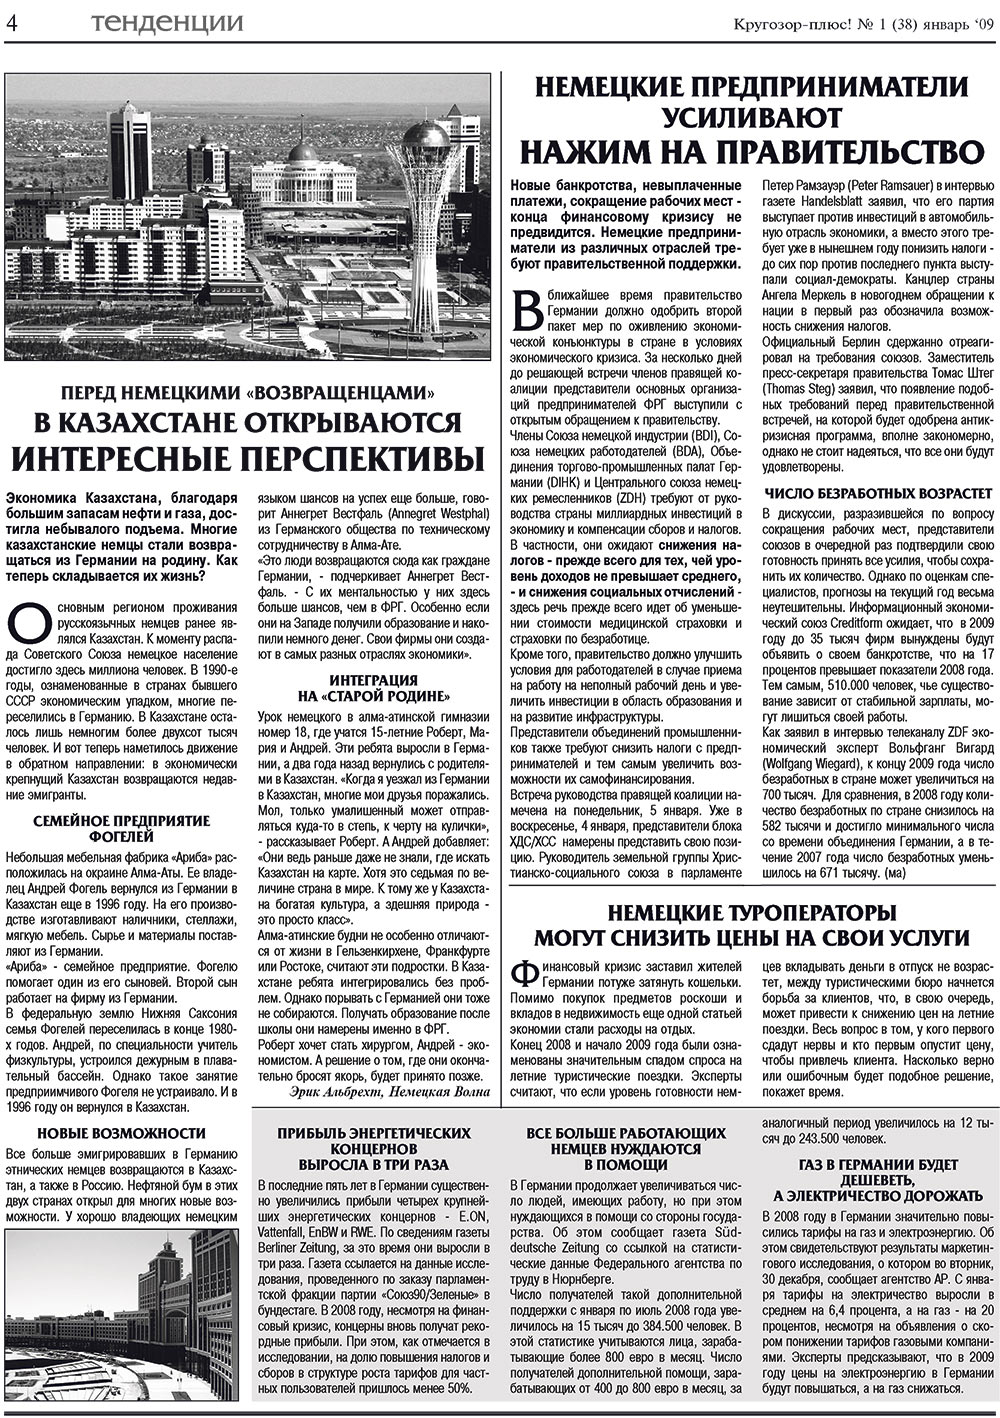 Кругозор плюс!, газета. 2009 №1 стр.4